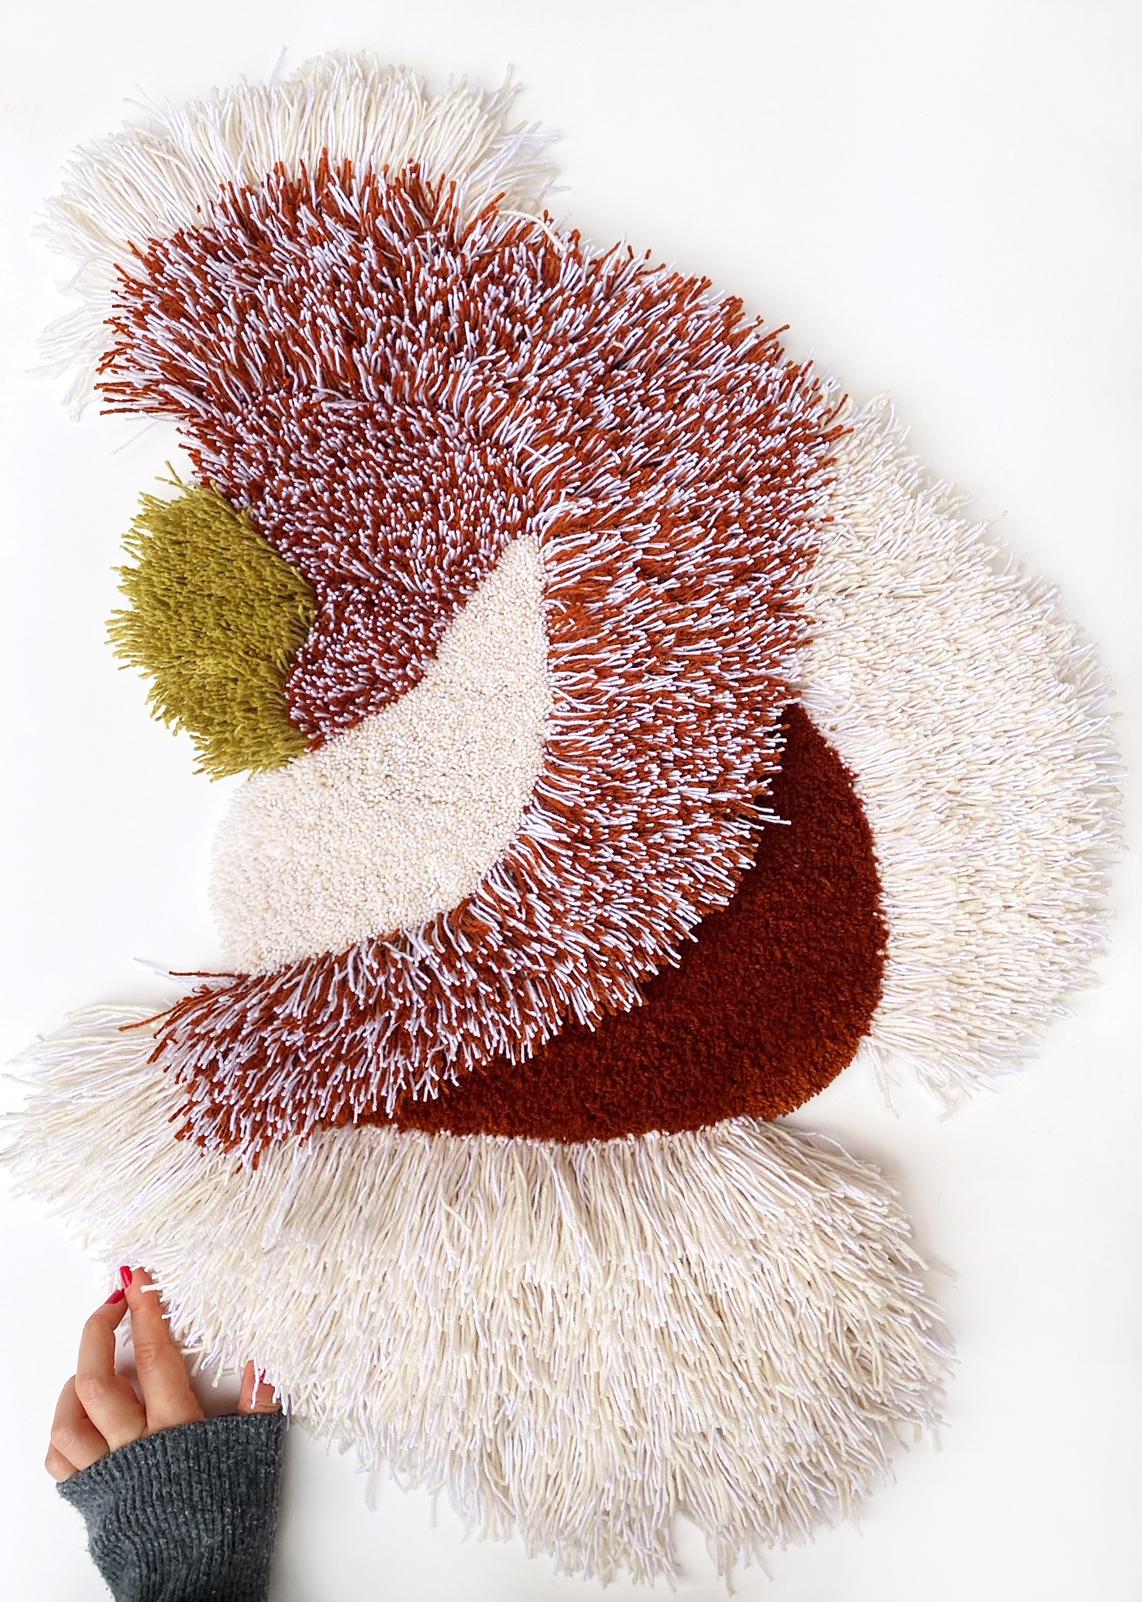 Textilobjekt - Einzigartig.
Handgefertigt von der Künstlerin in Kopenhagen aus 100% Wolle.
Die fließende, organische Form und die Weichheit der Wolle verleihen einem Raum eine großartige Textur.